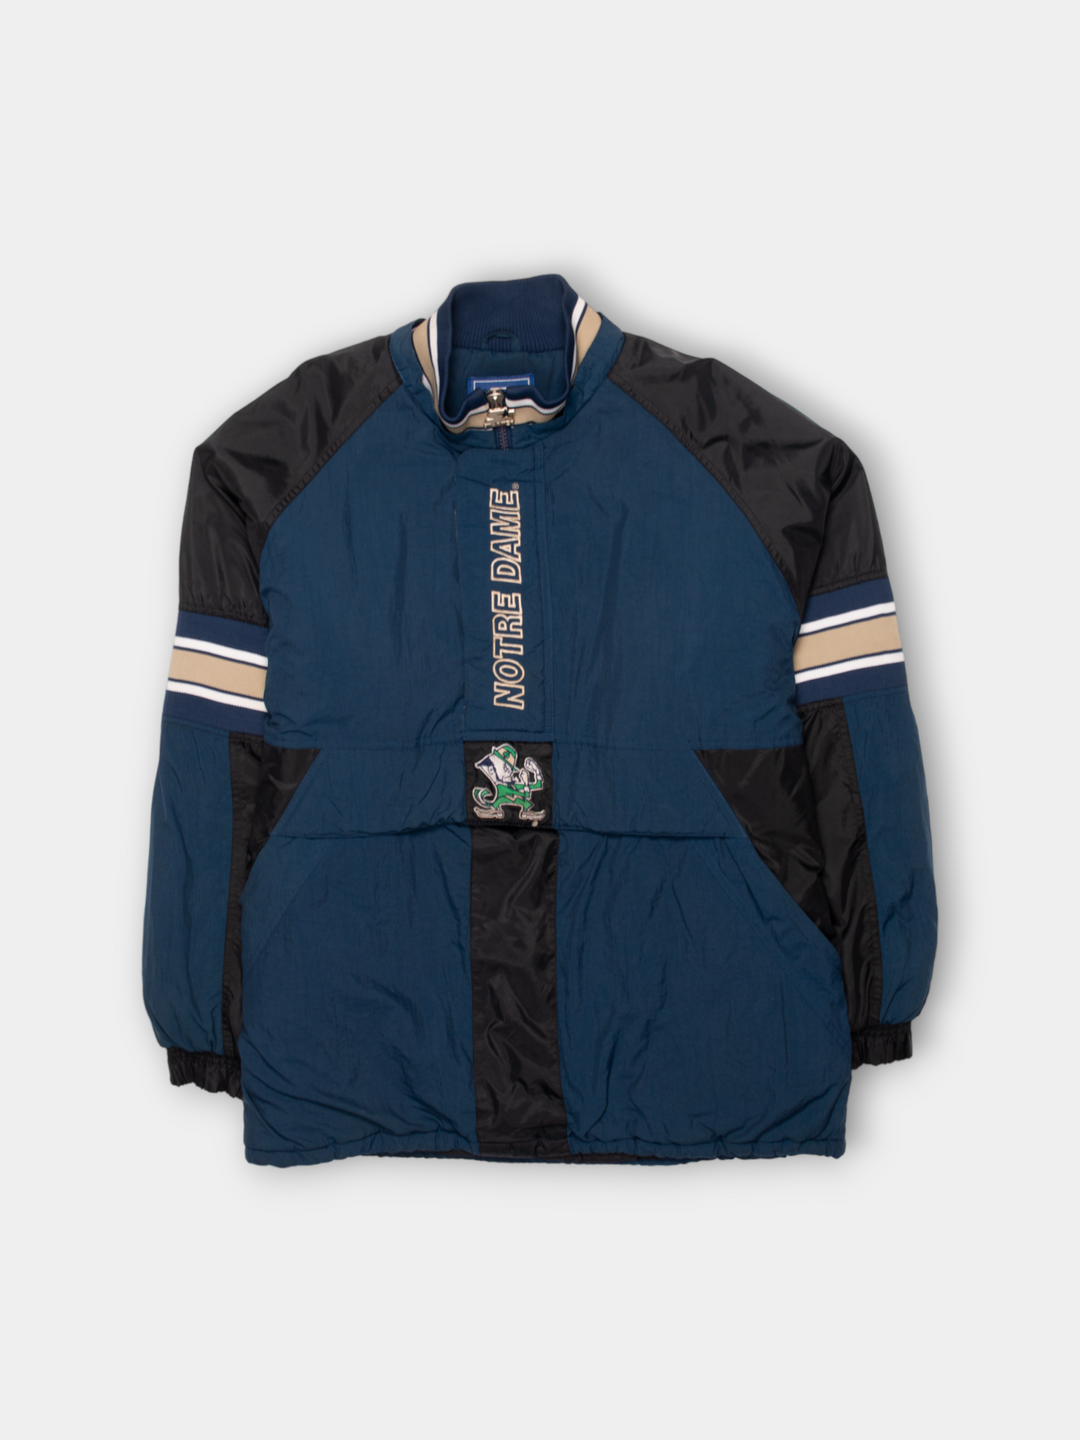 90s Notre Dame Starter Jacket (XL)